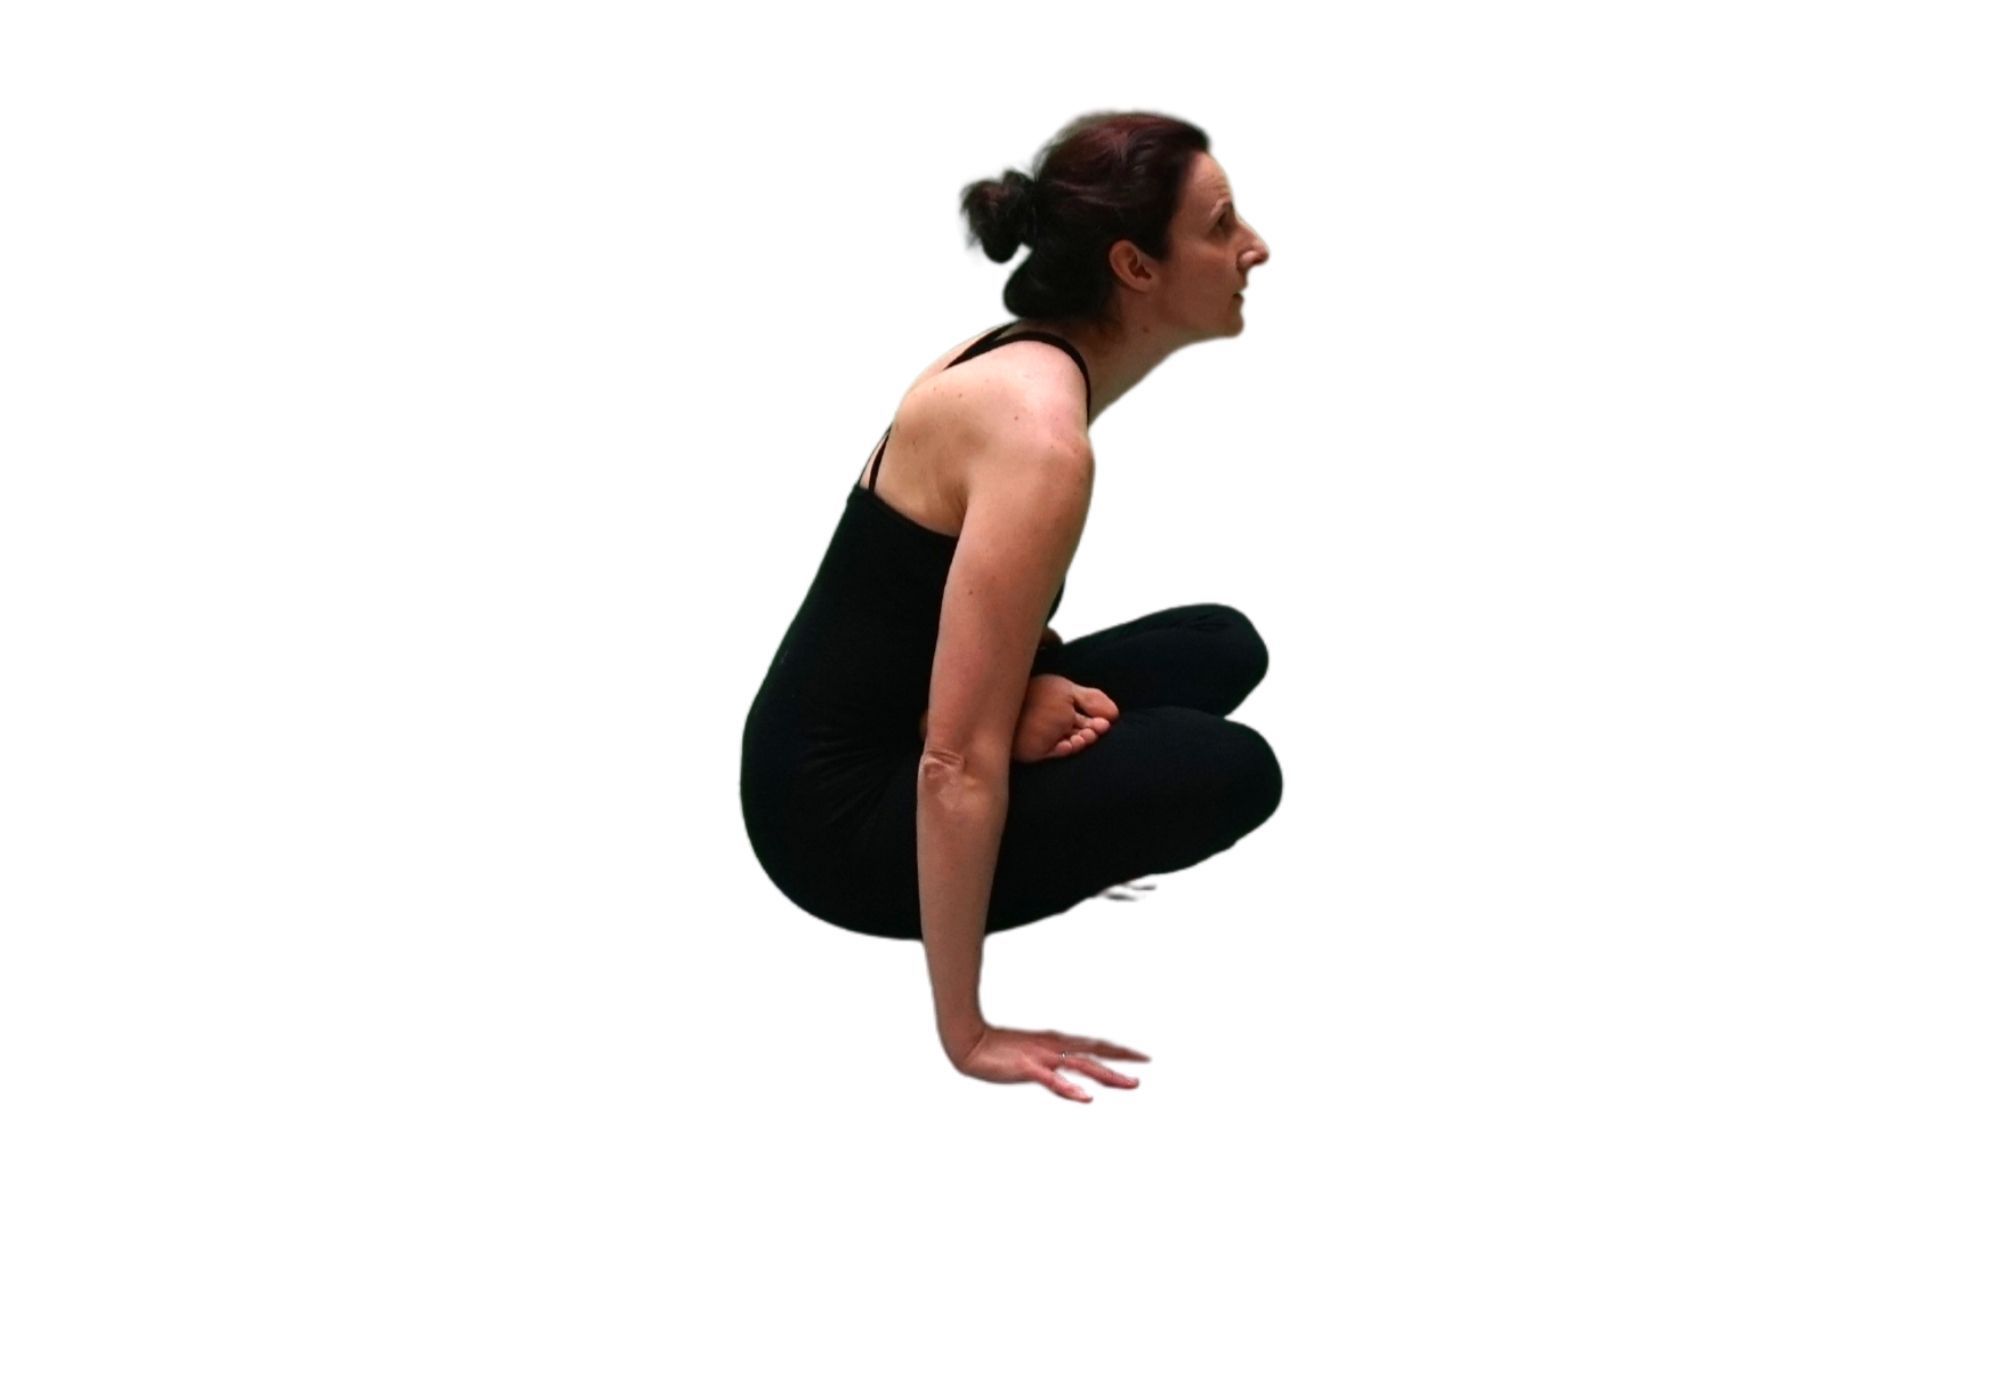 Posture de yoga : utplutih